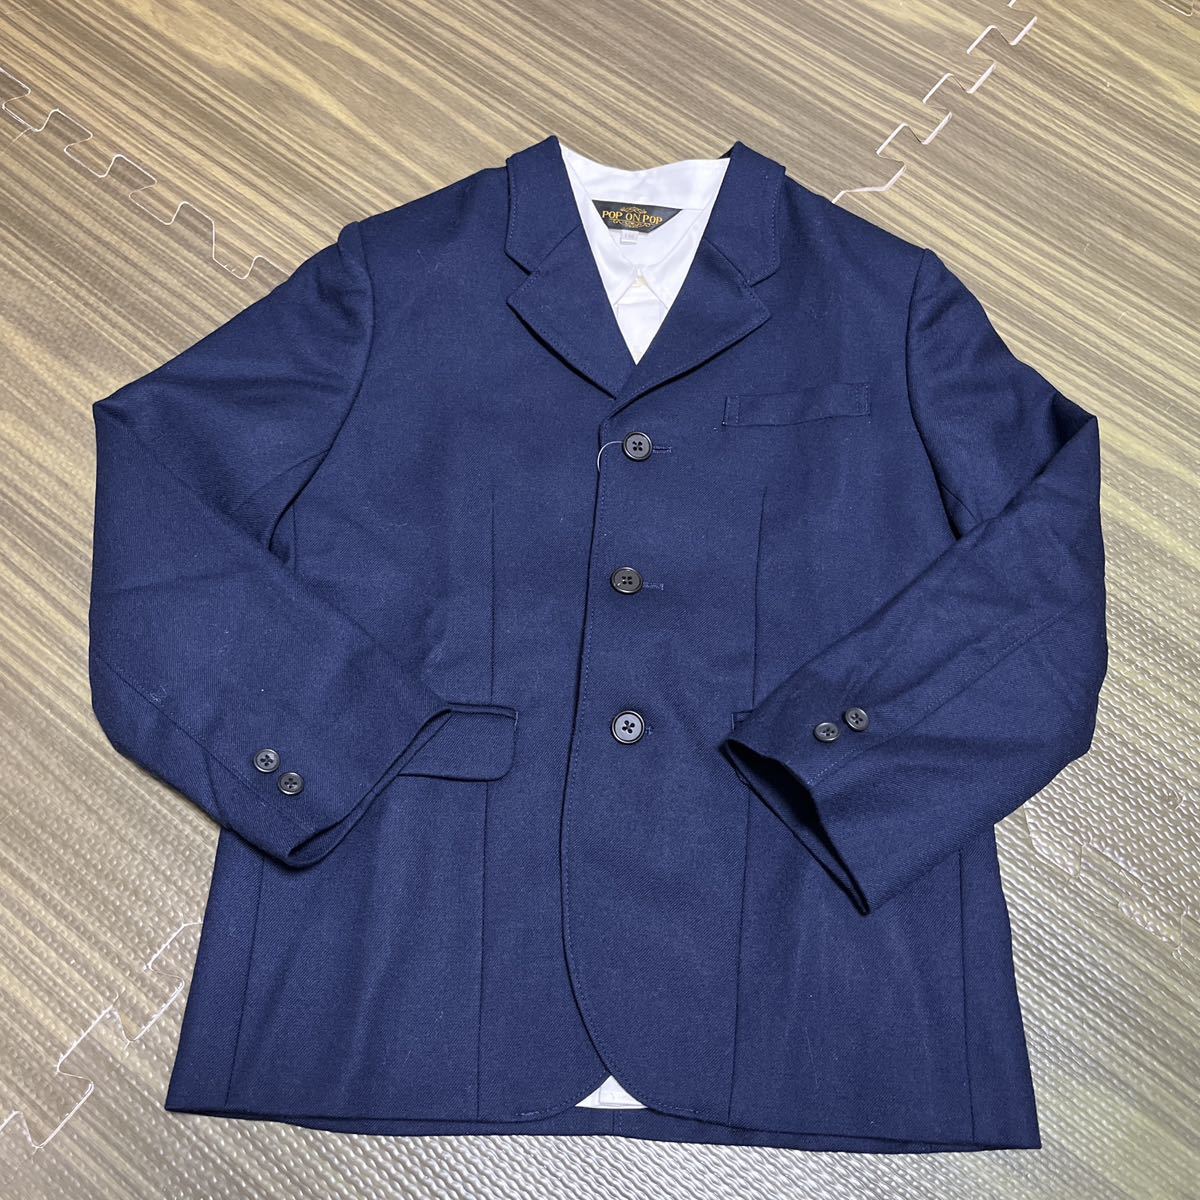 6-6 новый товар Kids формальный костюм 3 пункт выставить церемония темно-синий tailored jacket + шорты + белый рубашка 130.. тип входить . тип 